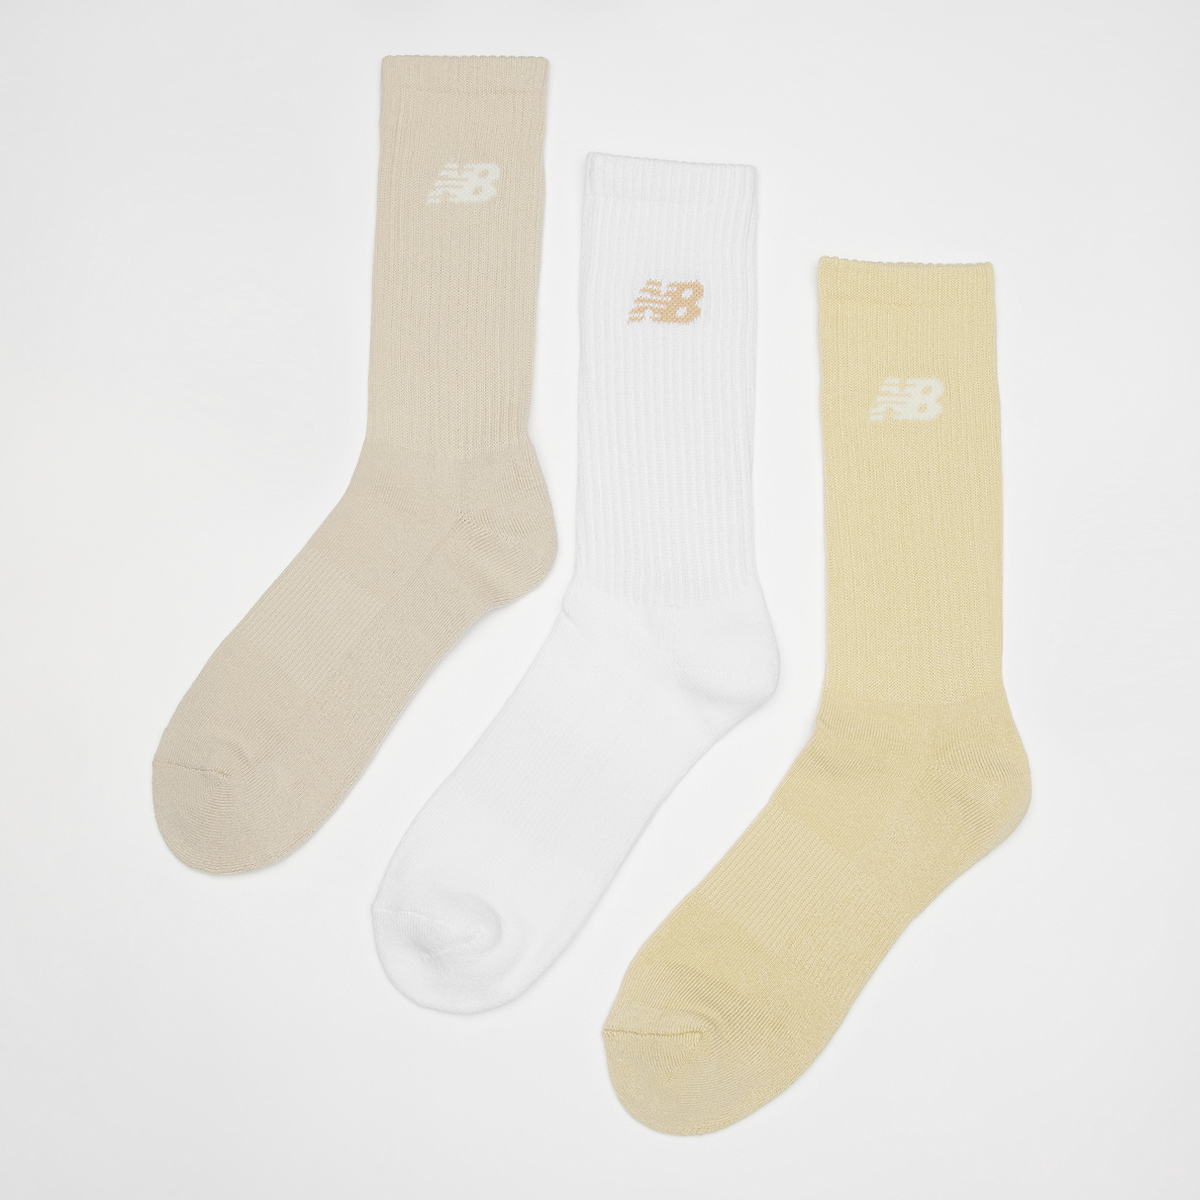 New Balance Lifestyle Cushioned Crew Socks (3 Pack) Lang Heren white beige maat: 35-38 beschikbare maaten:35-38 39-42 43-46